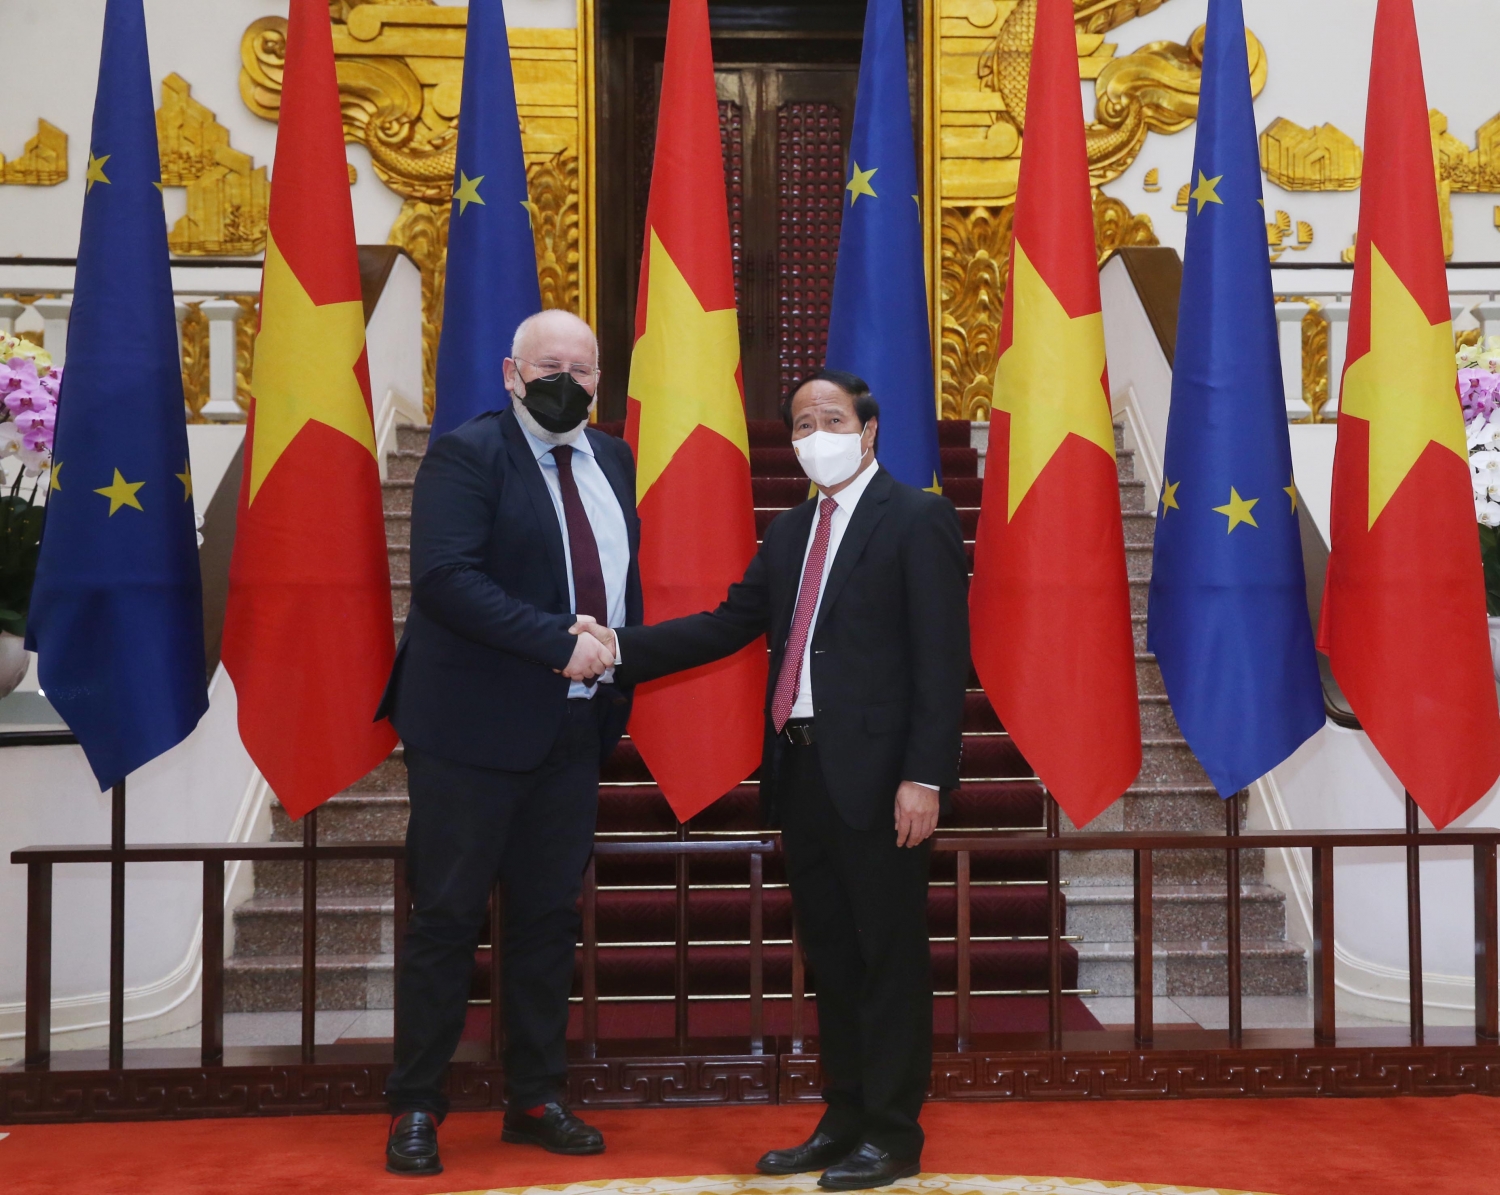 Phó Thủ tướng Lê Văn Thành hội đàm với  Phó Chủ tịch điều hành Uỷ ban Châu Âu Frans Timmermans